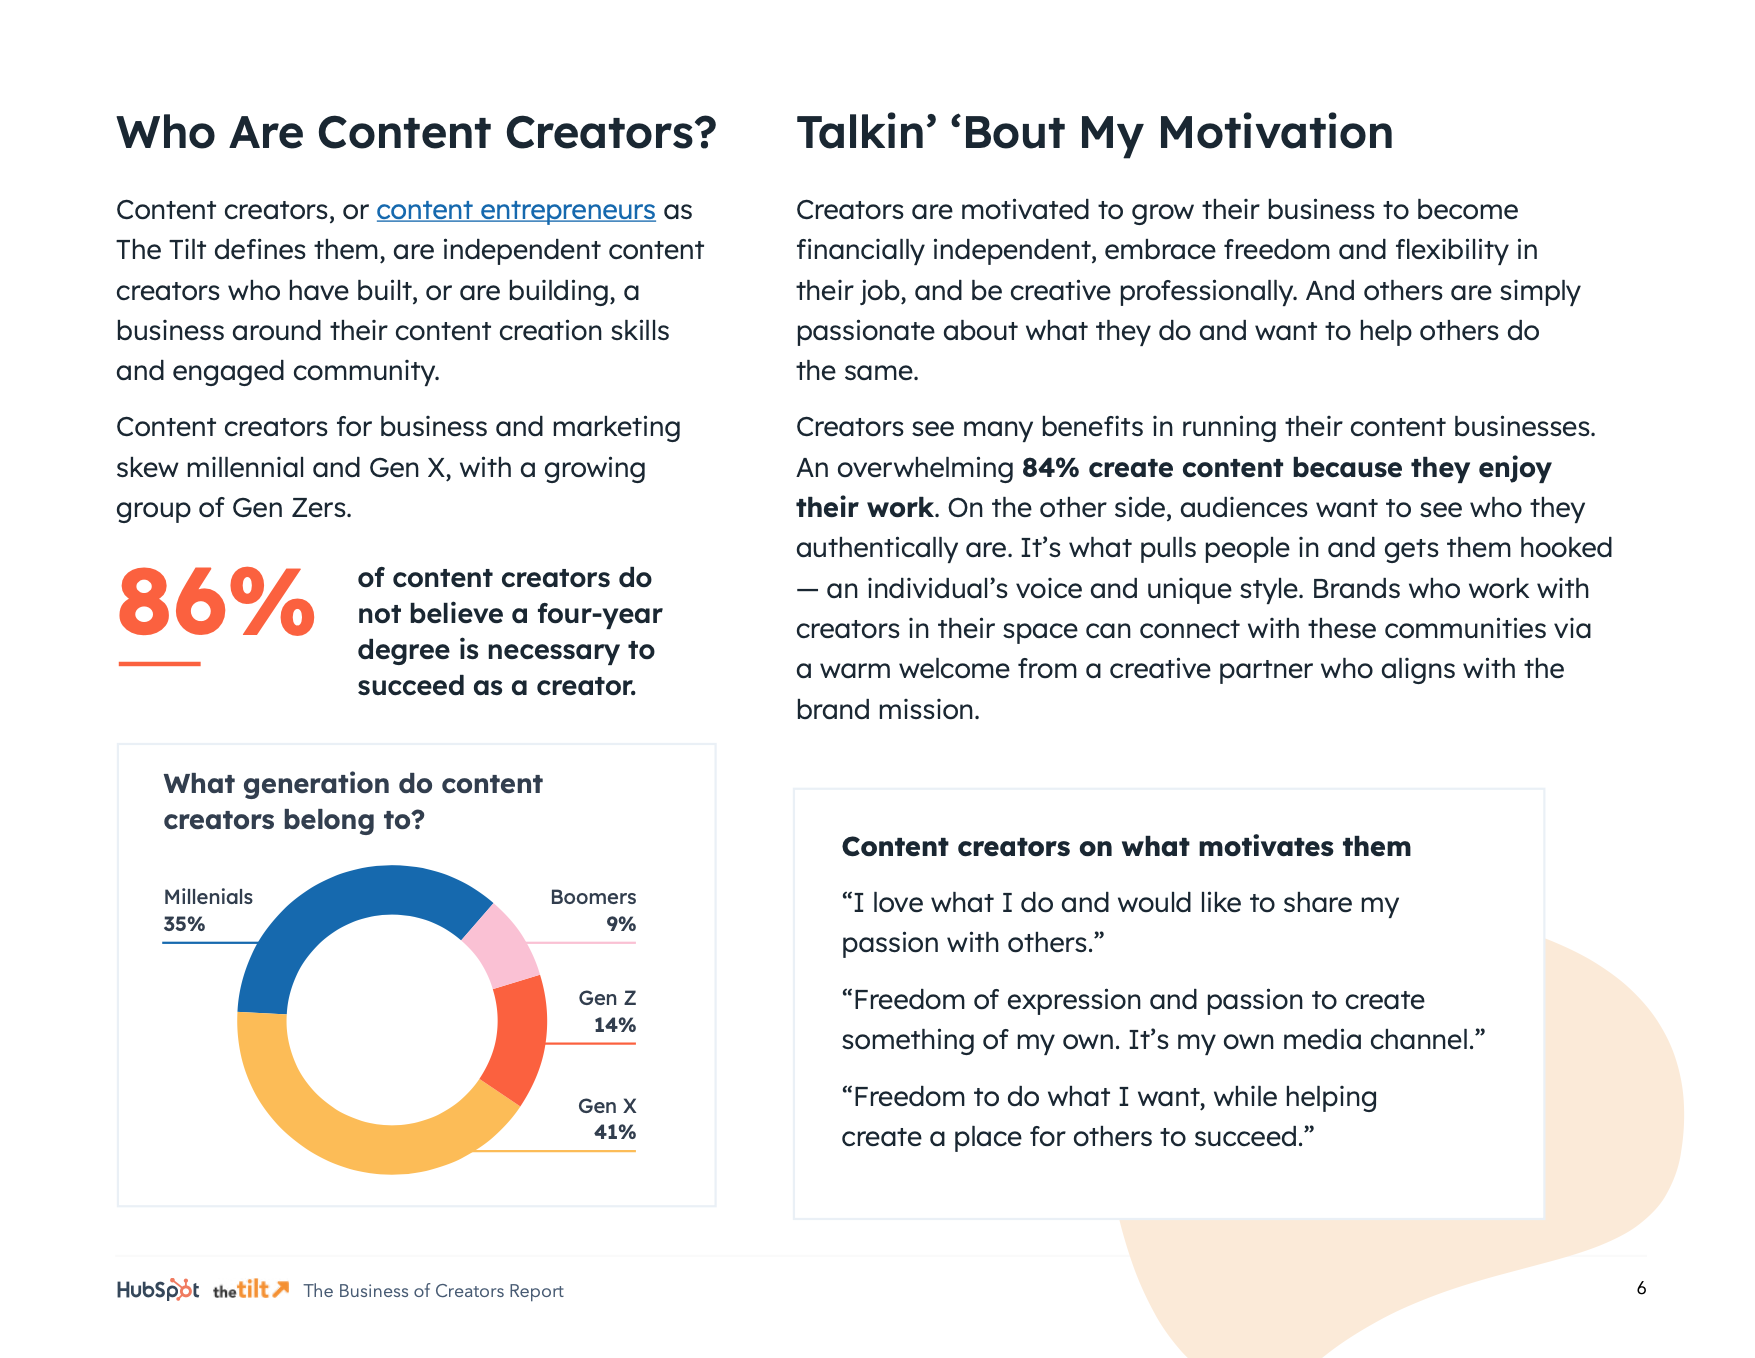 Who are content creators?